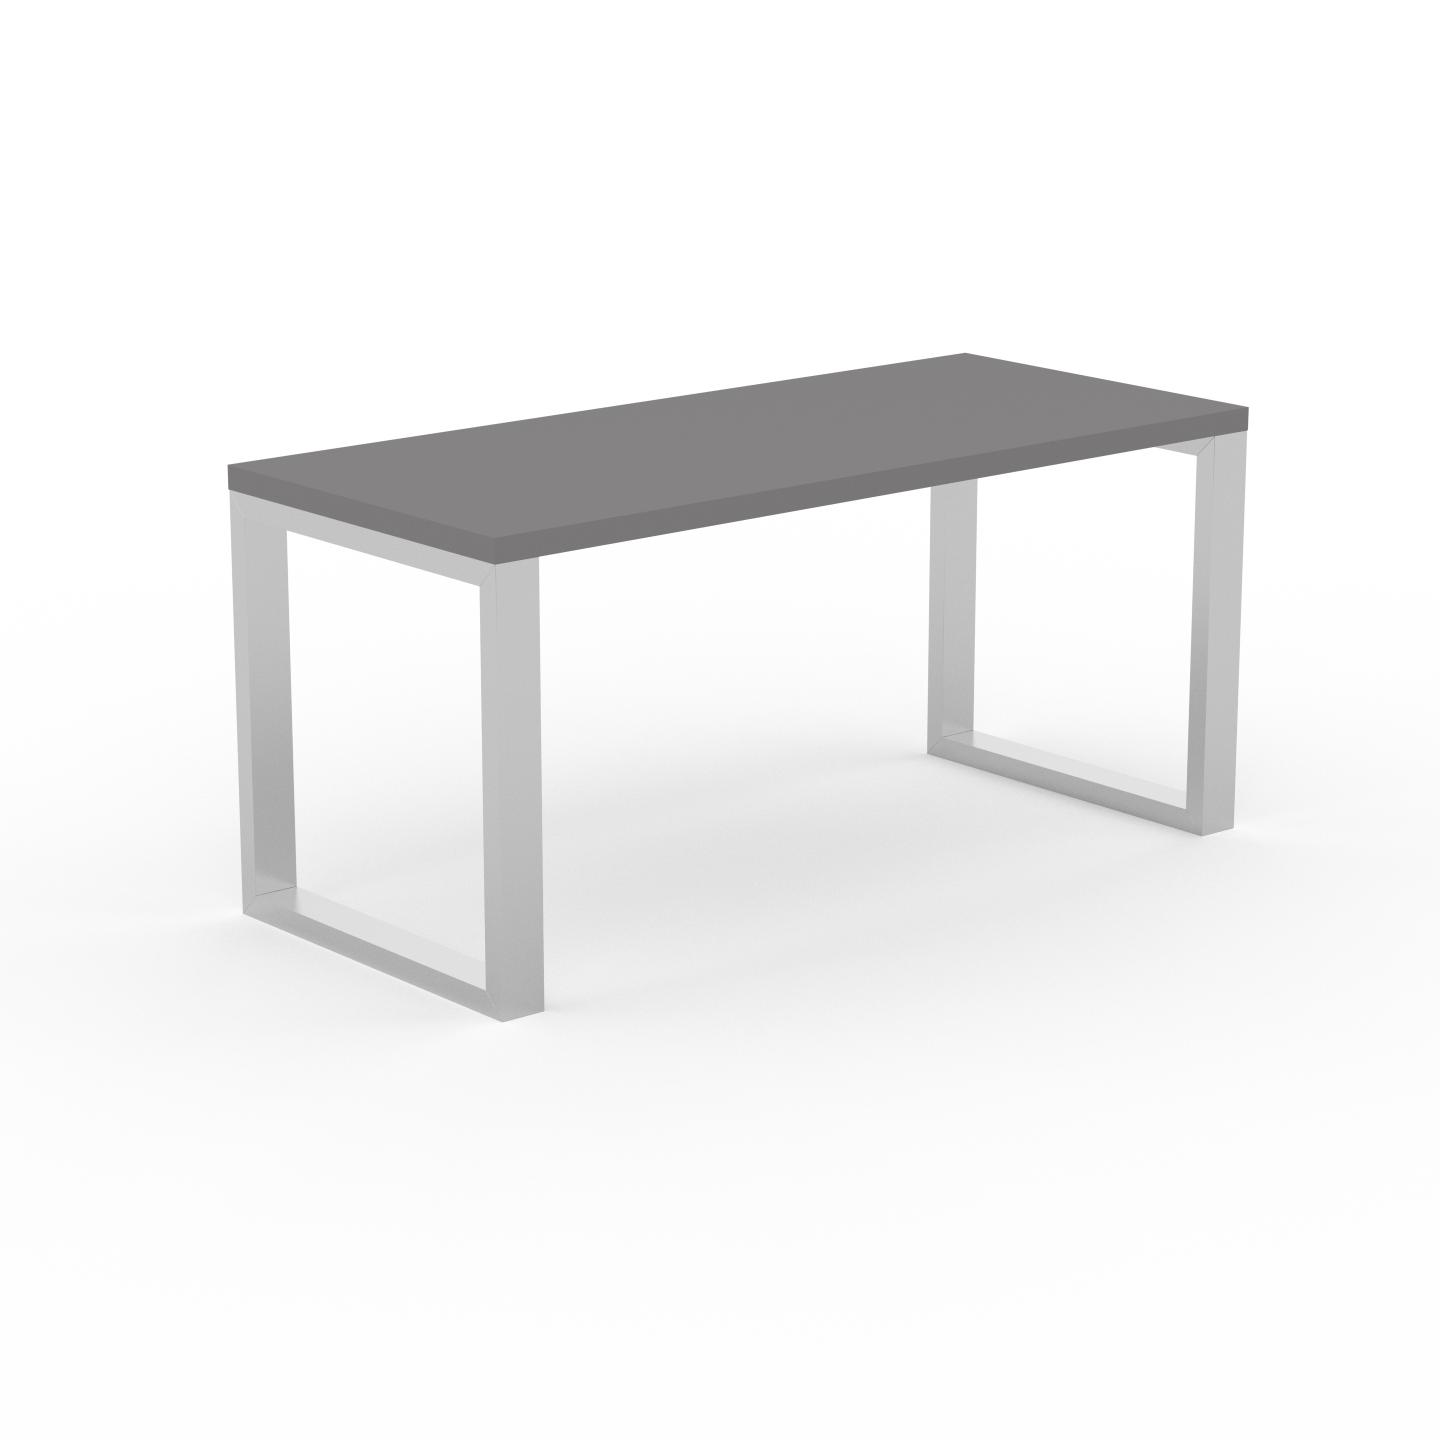 MYCS Schreibtisch Massivholz Grau - Moderner Massivholz-Schreibtisch: Einzigartiges Design - 160 x 75 x 70 cm, konfigurierbar